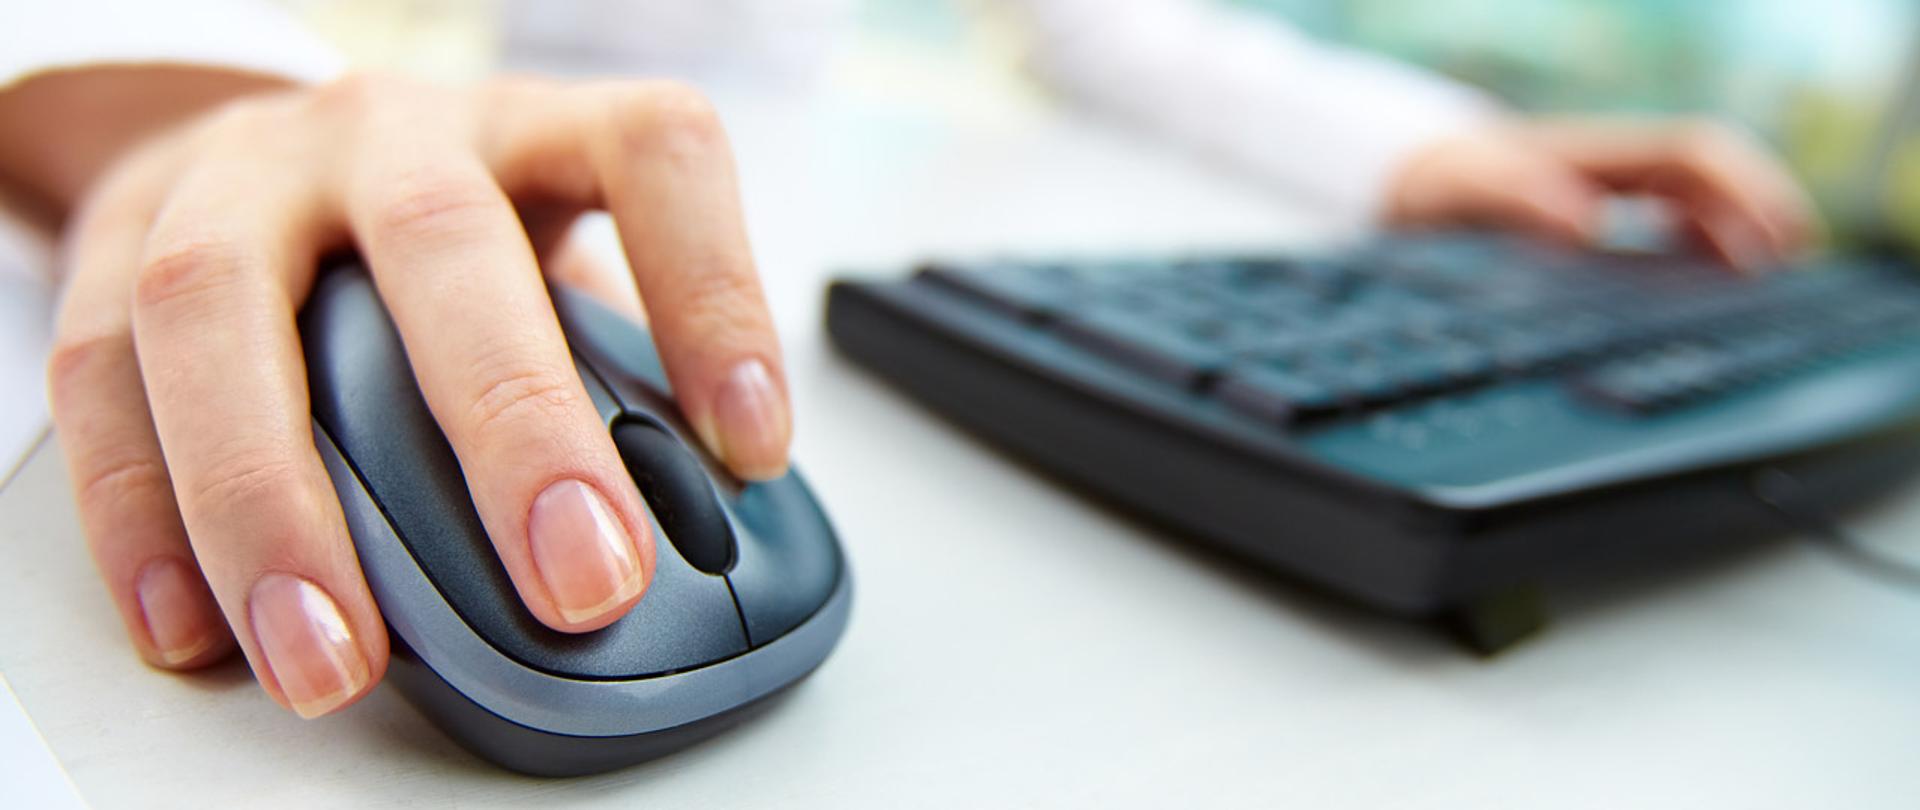 Dłoń na myszy komputerowe, druga na klawiaturze komputerowej.